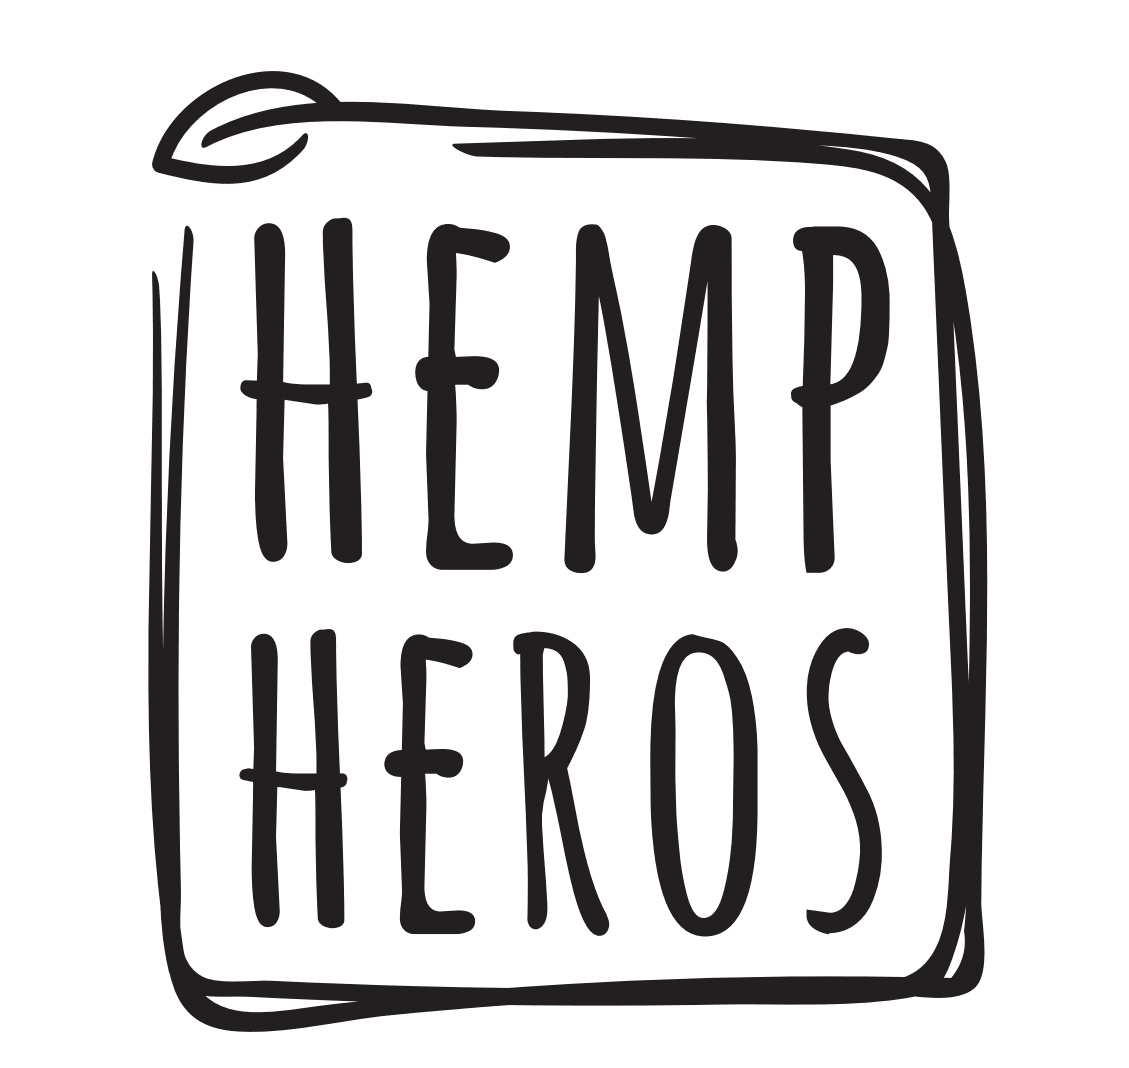 Hemp Heros CBD products